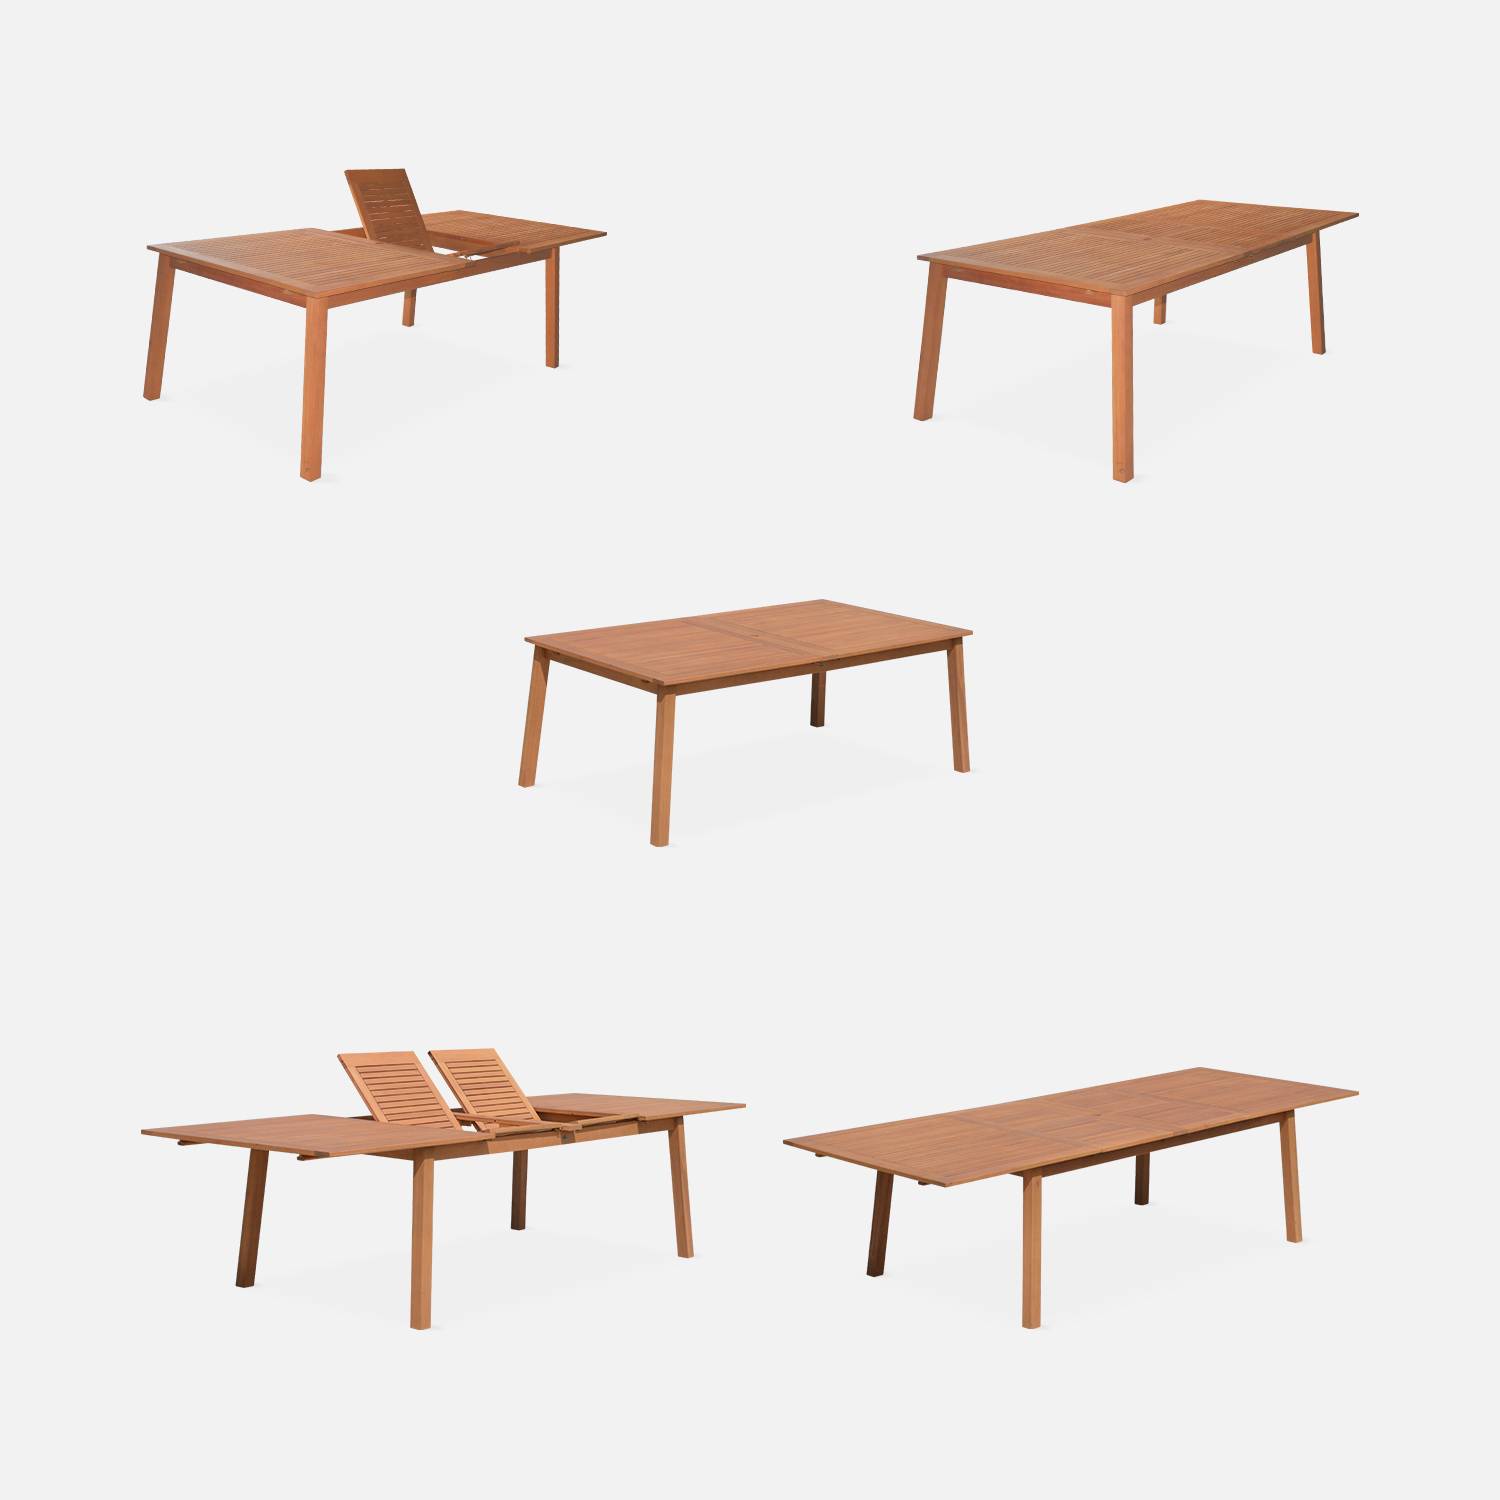 Ausziehbares Gartenmöbelset aus Holz - Almeria Tisch 200/250/300cm mit 2 Verlängerungsplatten, 2 Sesseln und 8 Stühlen, aus geöltem FSC Eukalyptusholz und nachtblauem Textilene Photo3